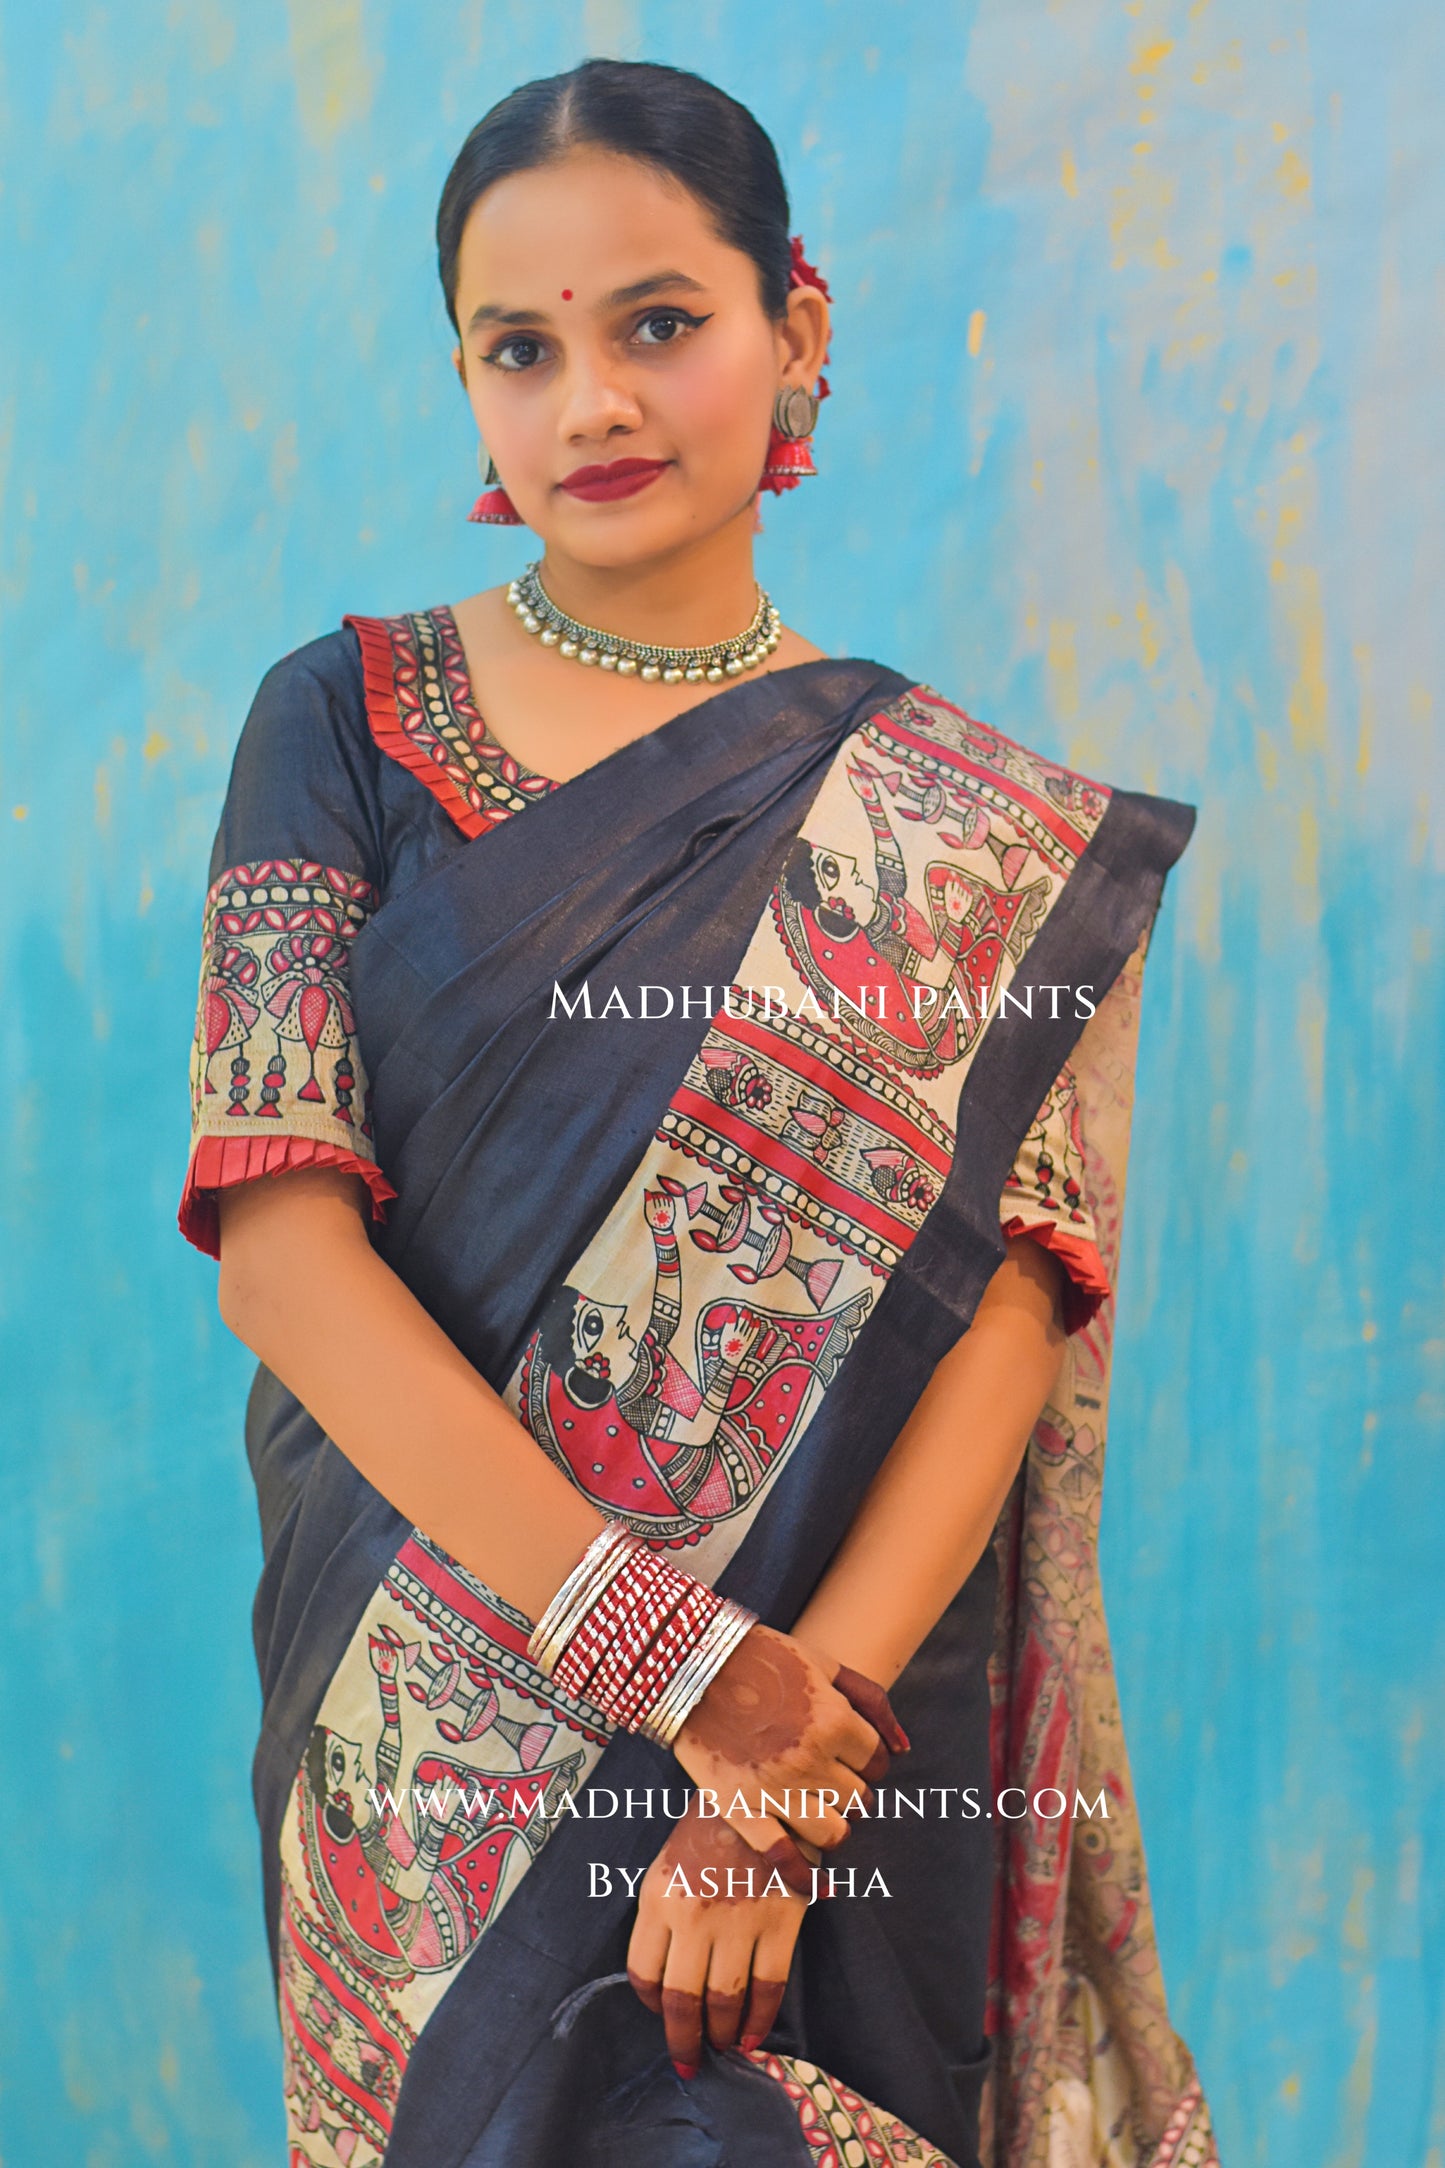 SHAMBHAVI Hand-painted Tussar Silk Saree Blouse Set